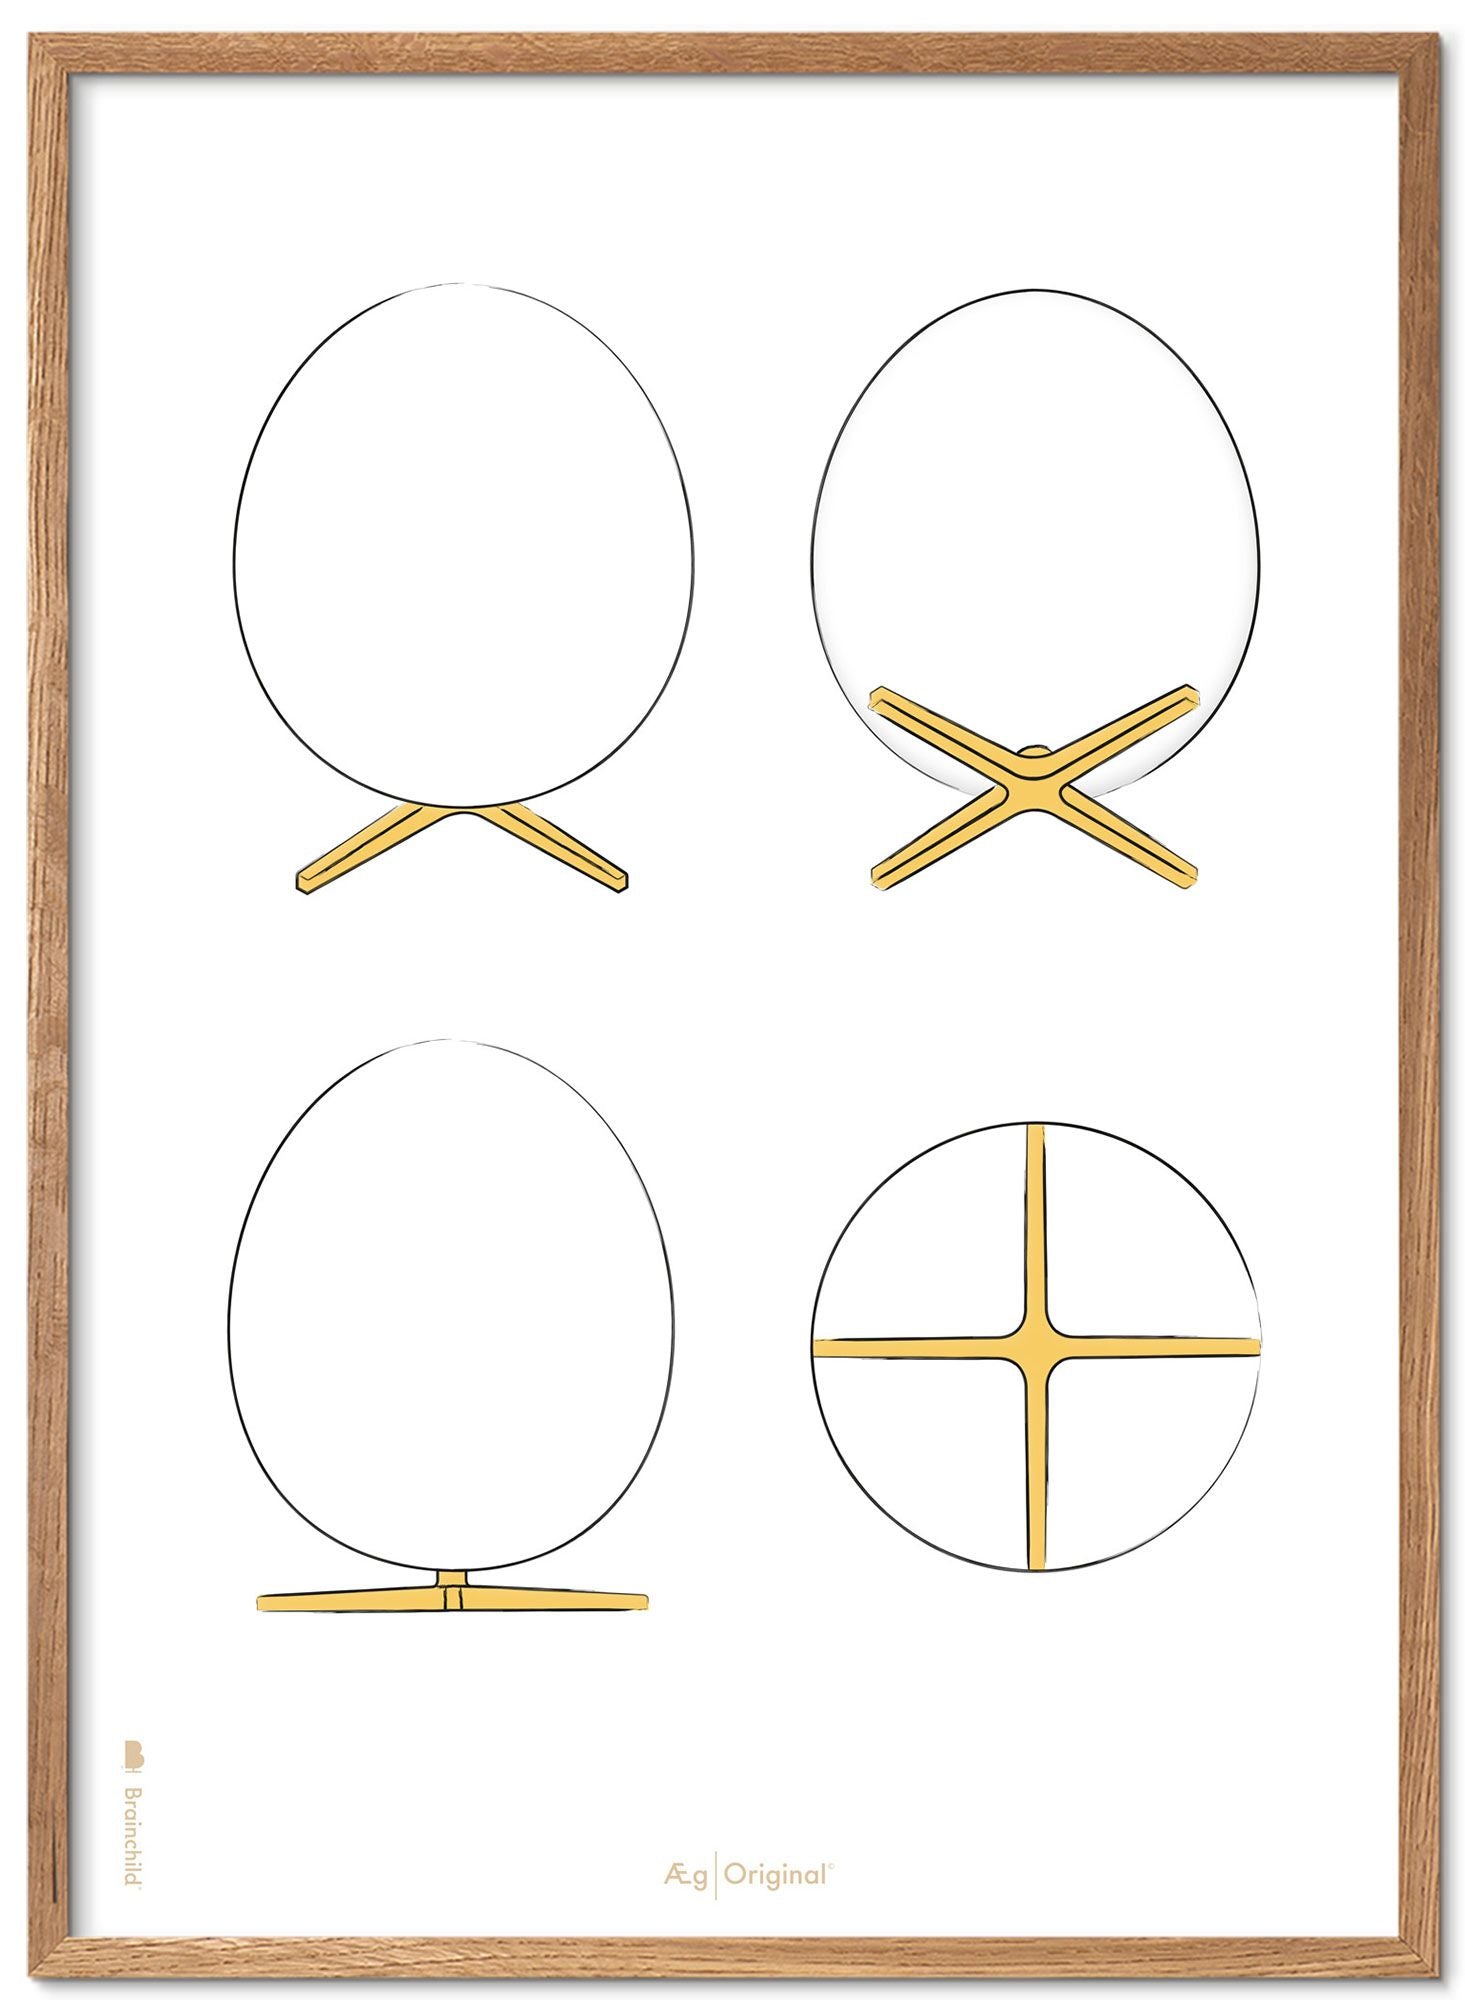 Brainchild Cadre pour affiche The Egg Design Sketches, en bois clair, 50x70 Cm, fond blanc